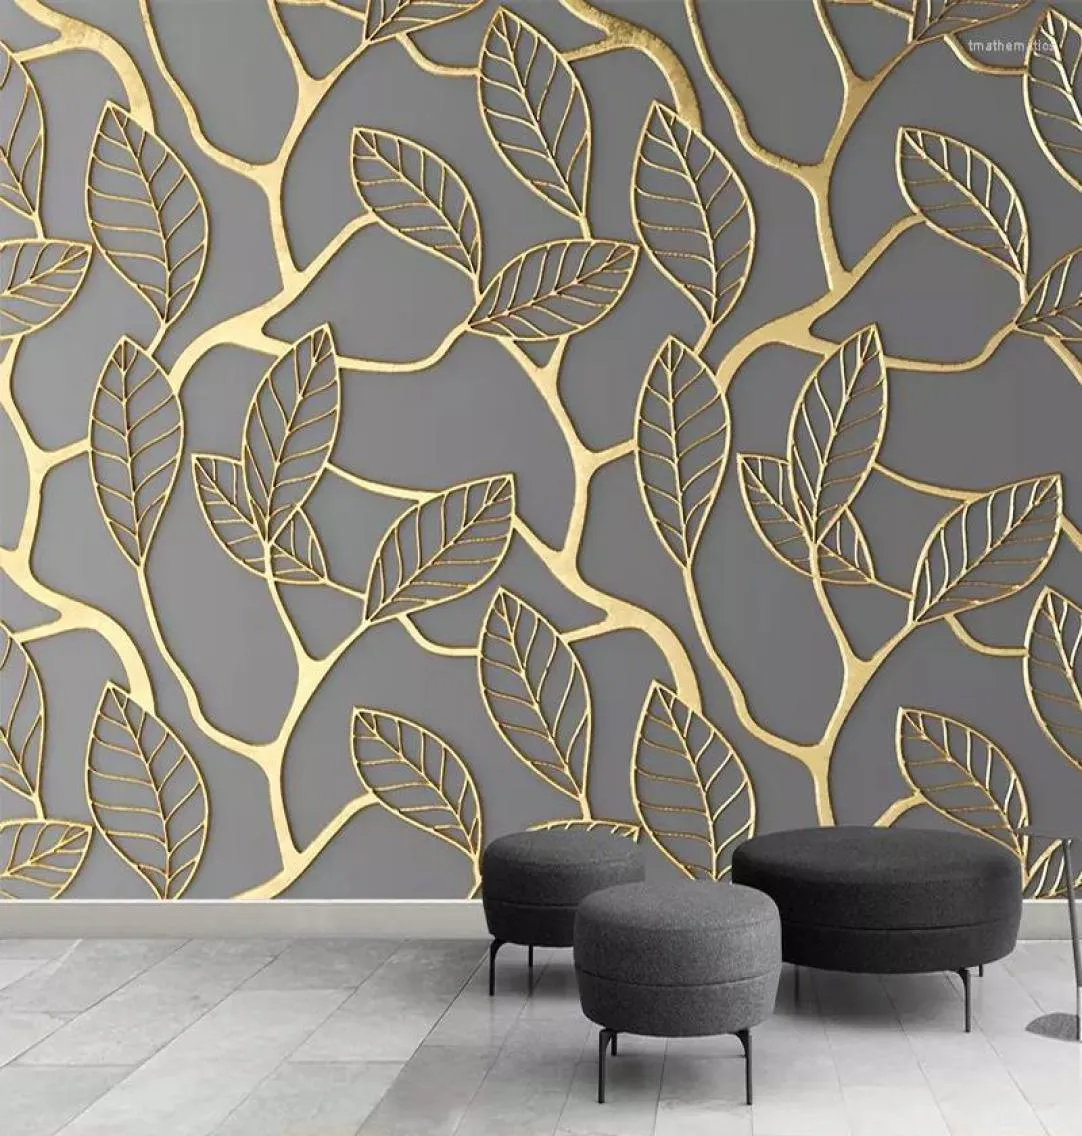 Fonds d'écran PO personnalisé PO Fond d'écran pour les murs 3D Stéréoscopique Golden Tree Fetes Salon Room TV Fond Mur Mural Papier Créatif 3D3890239